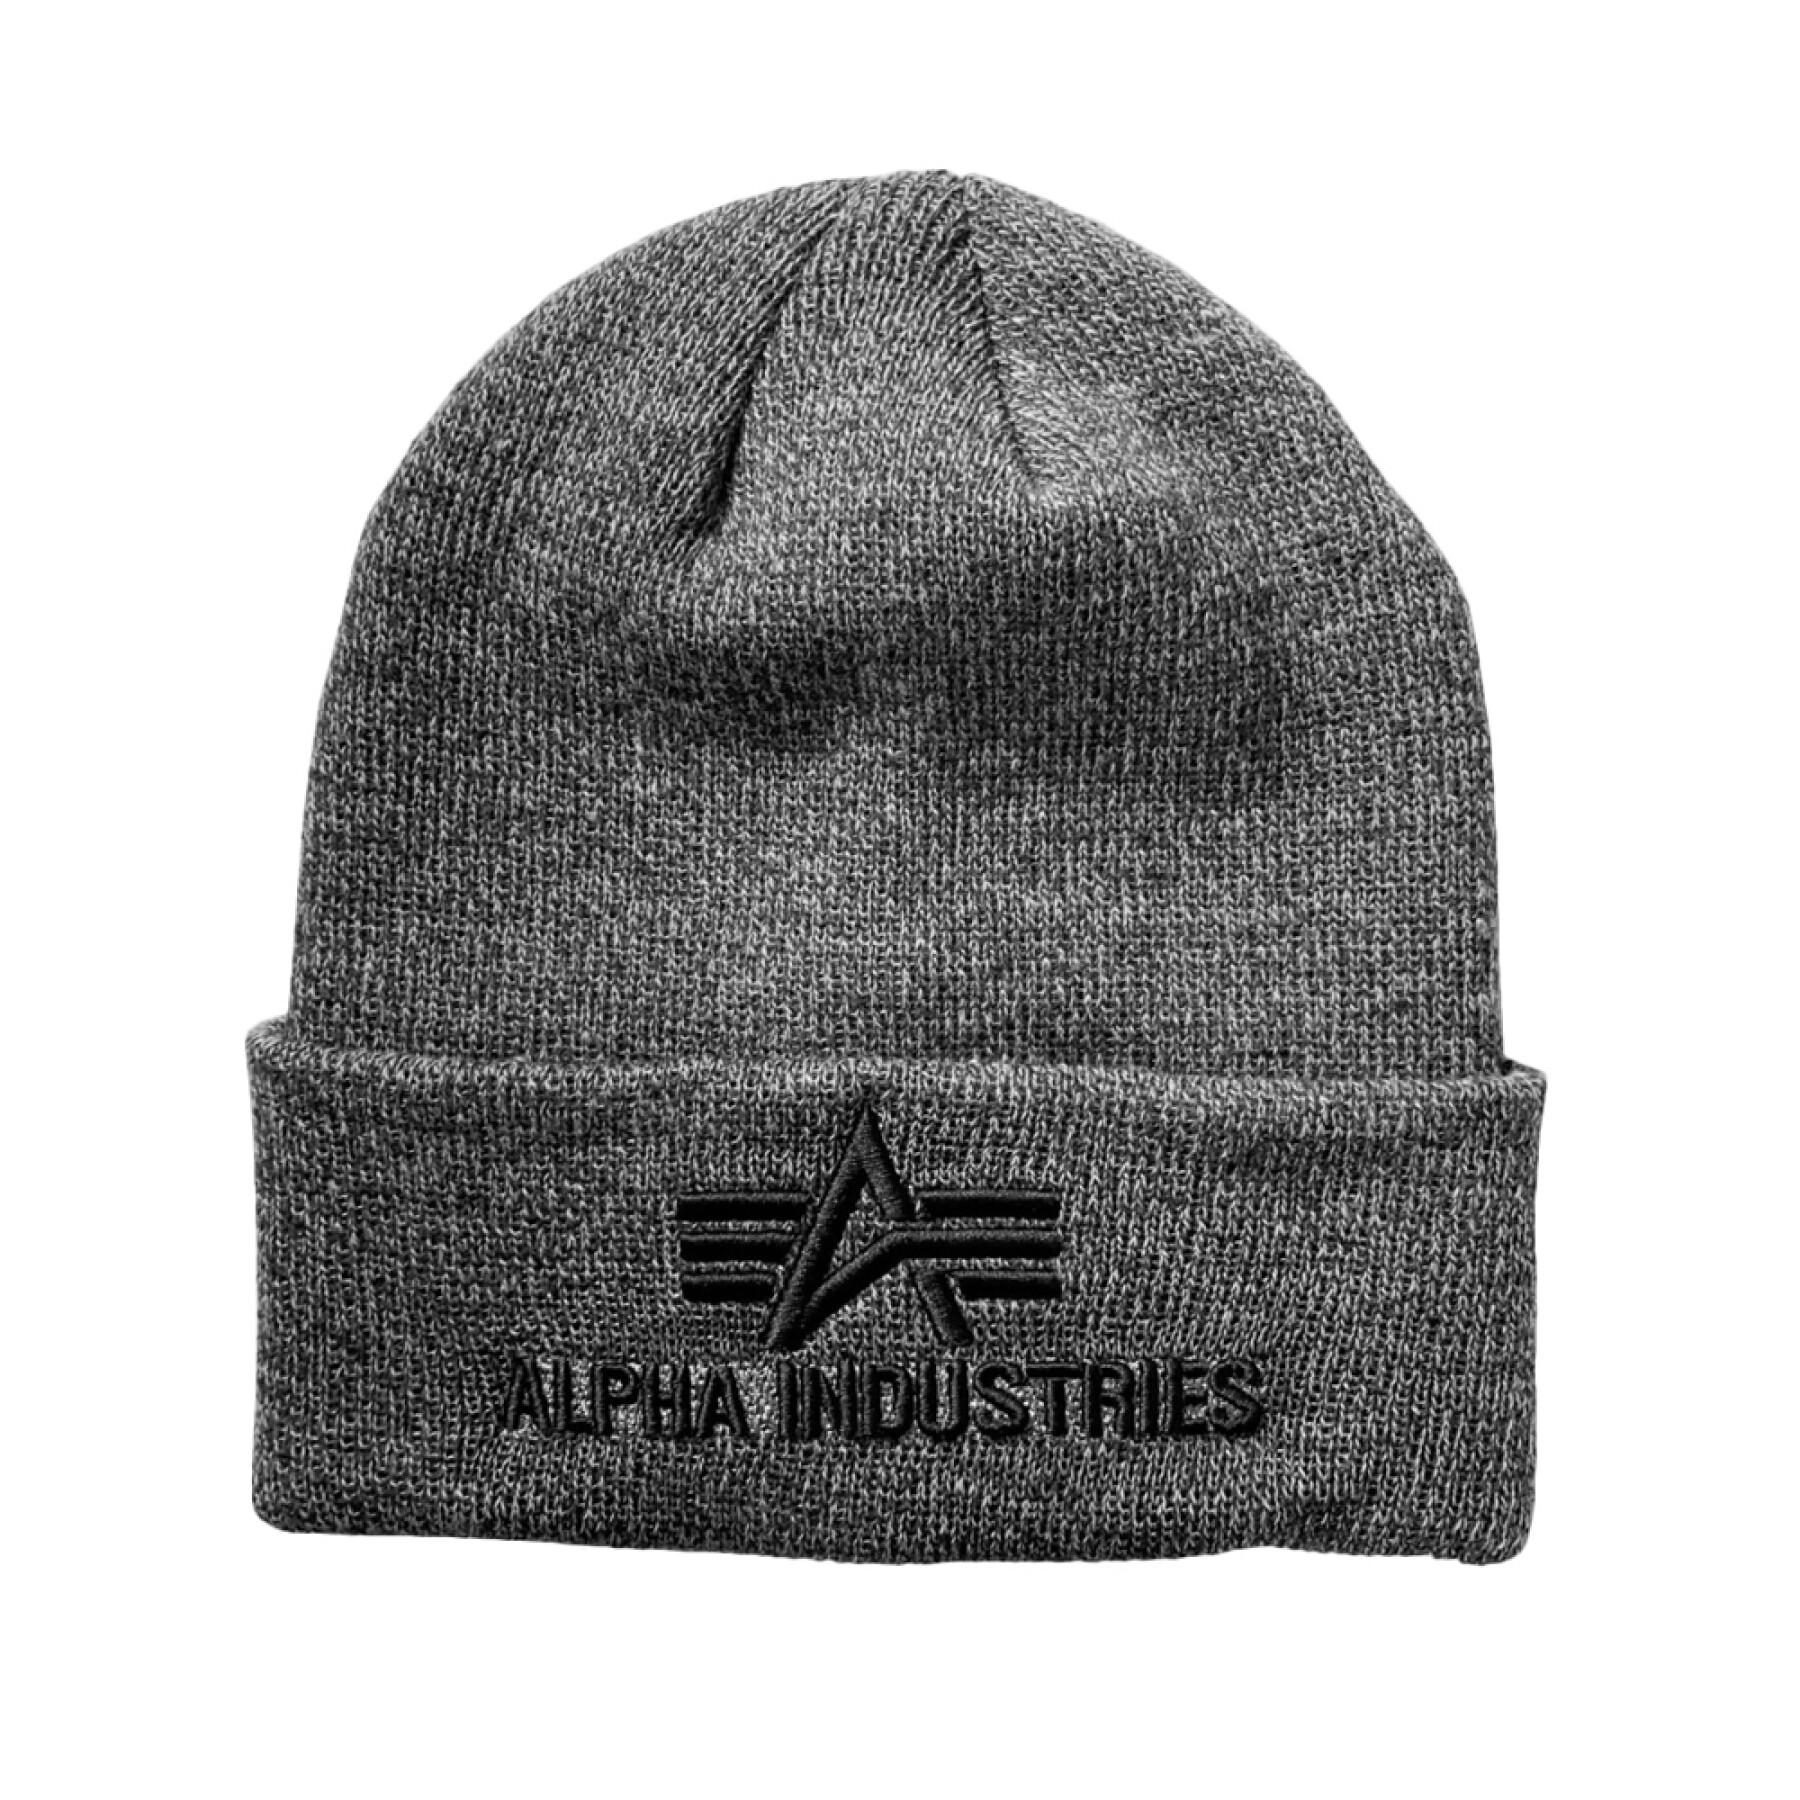 Mütze Alpha Industries 3D